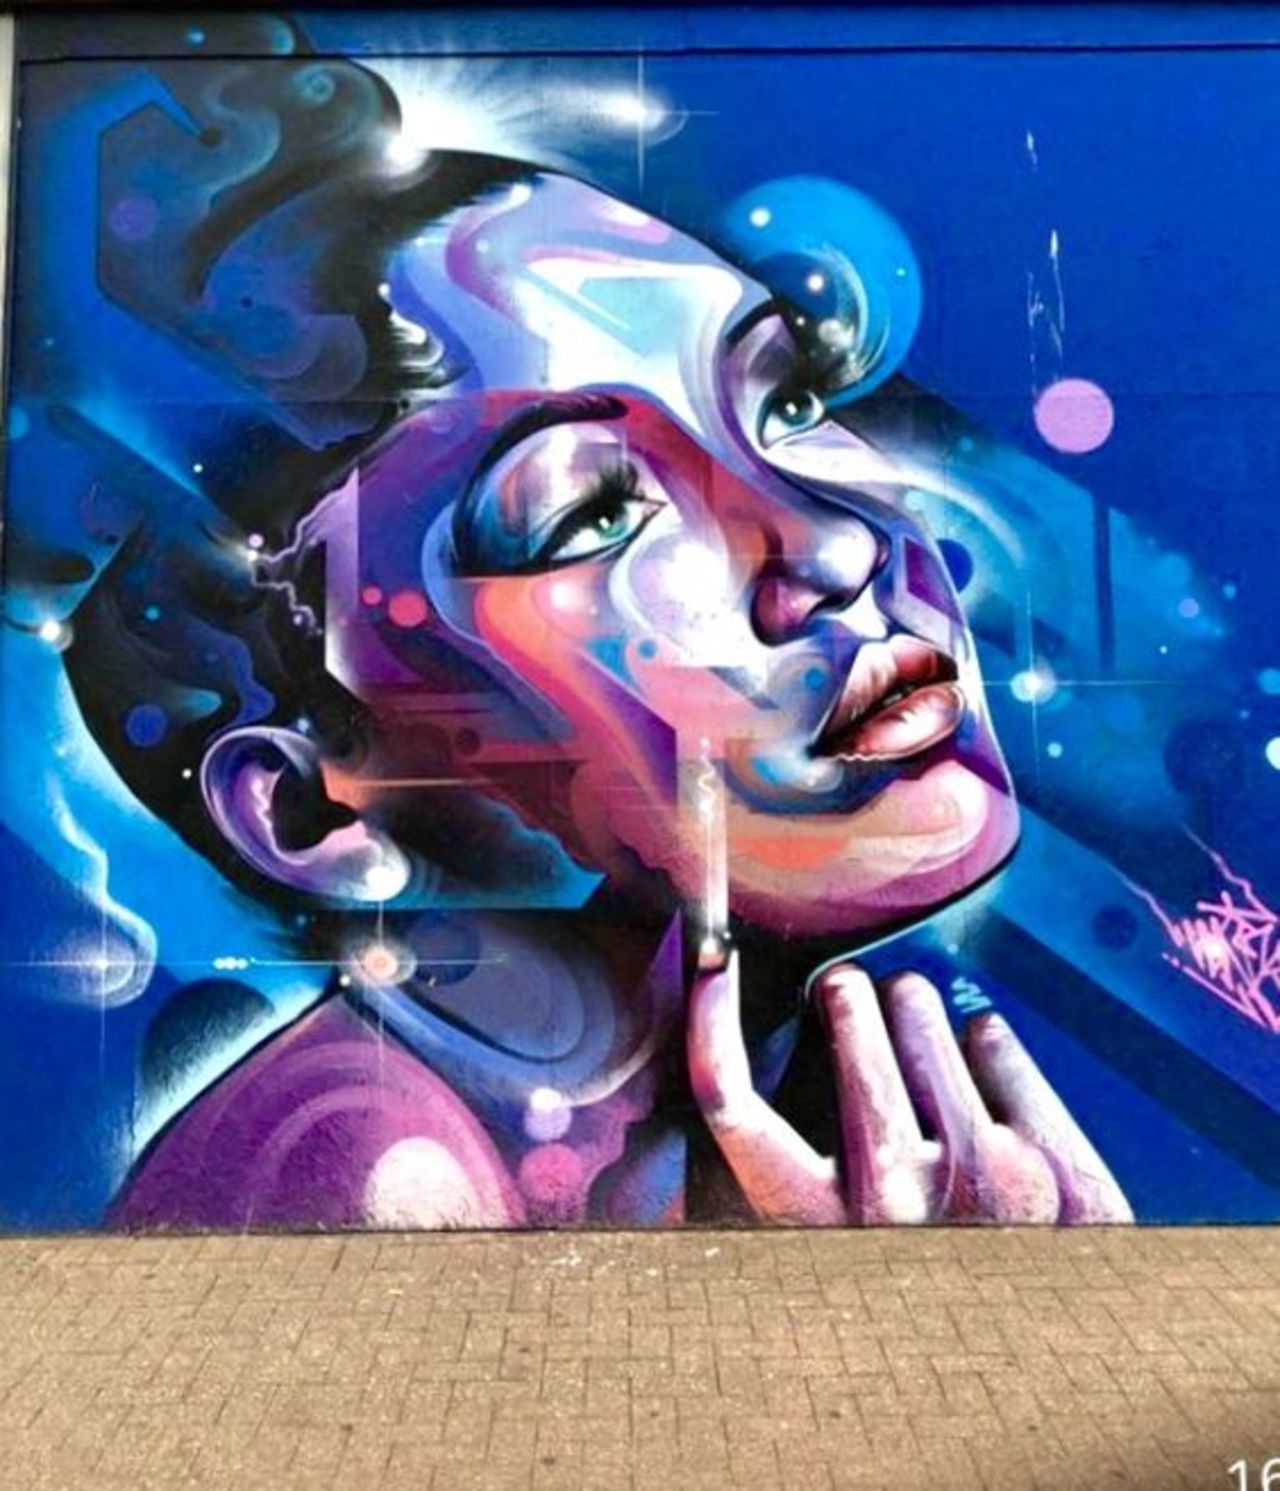 ... like a look... dreamy. Art by Mr. Cenz in Southend-on-Sea, UK #StreetArt #art #beauty #Dream #Eyes #Graffiti #Mural #UrbanArt https://t.co/w8Ua0J9pBm